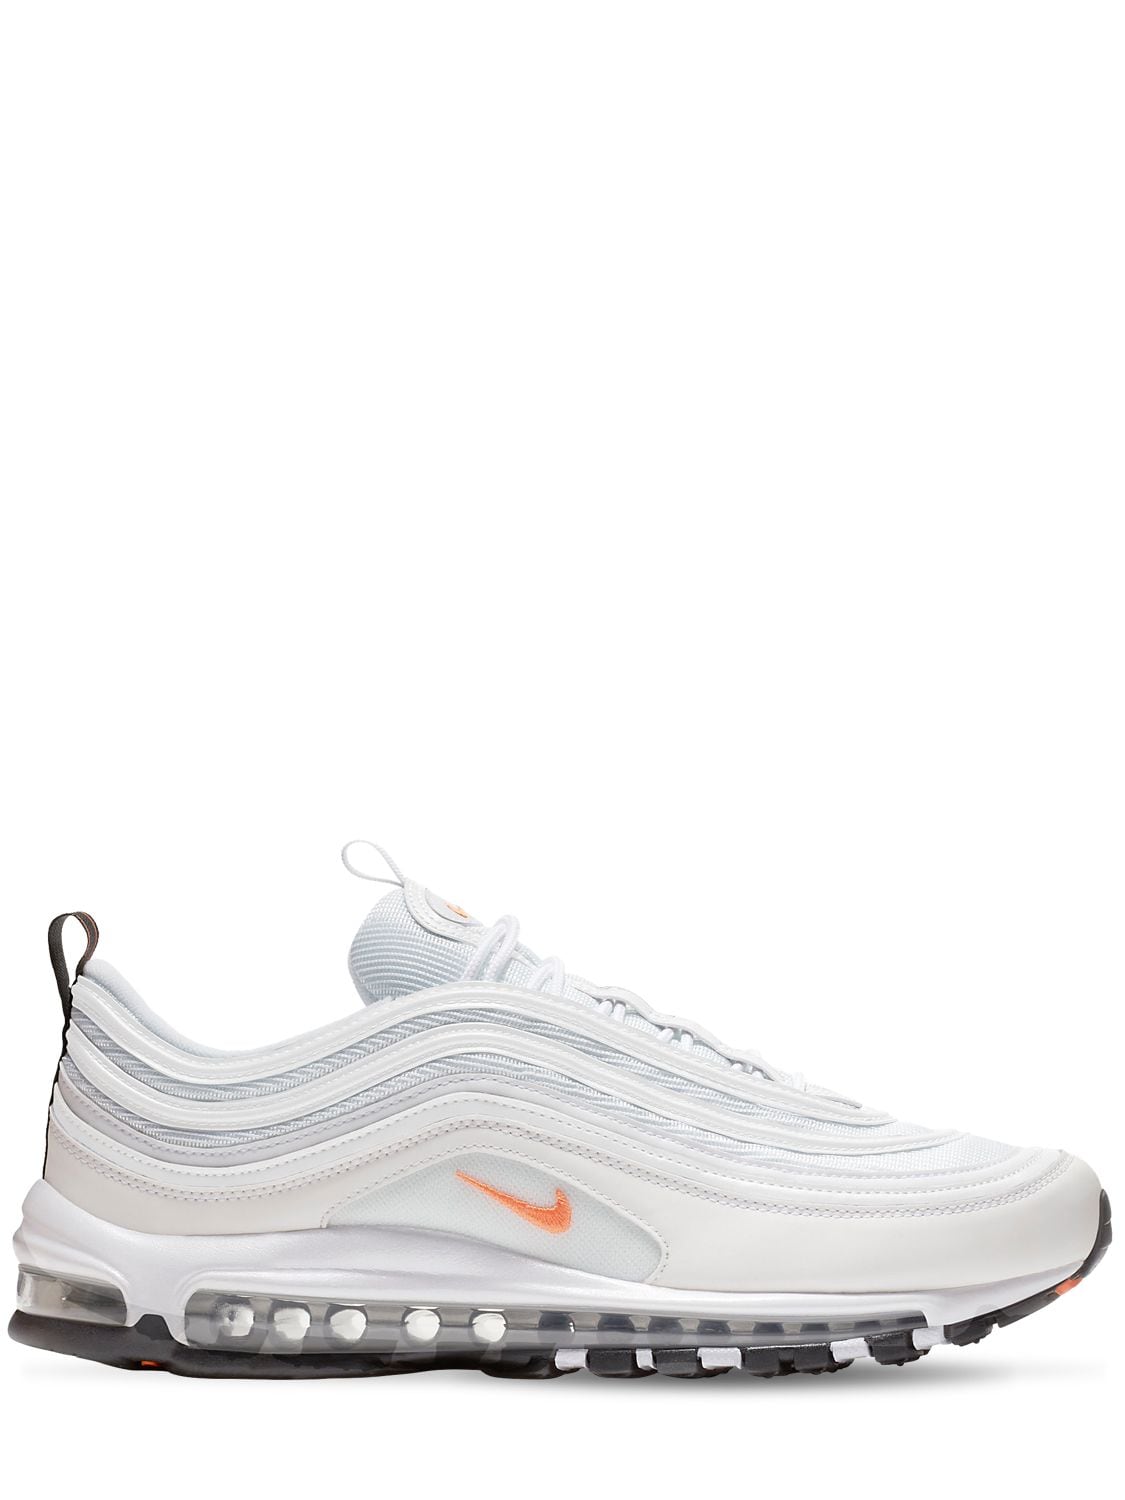 Nike Air Max 97 Premium Sneakers In White